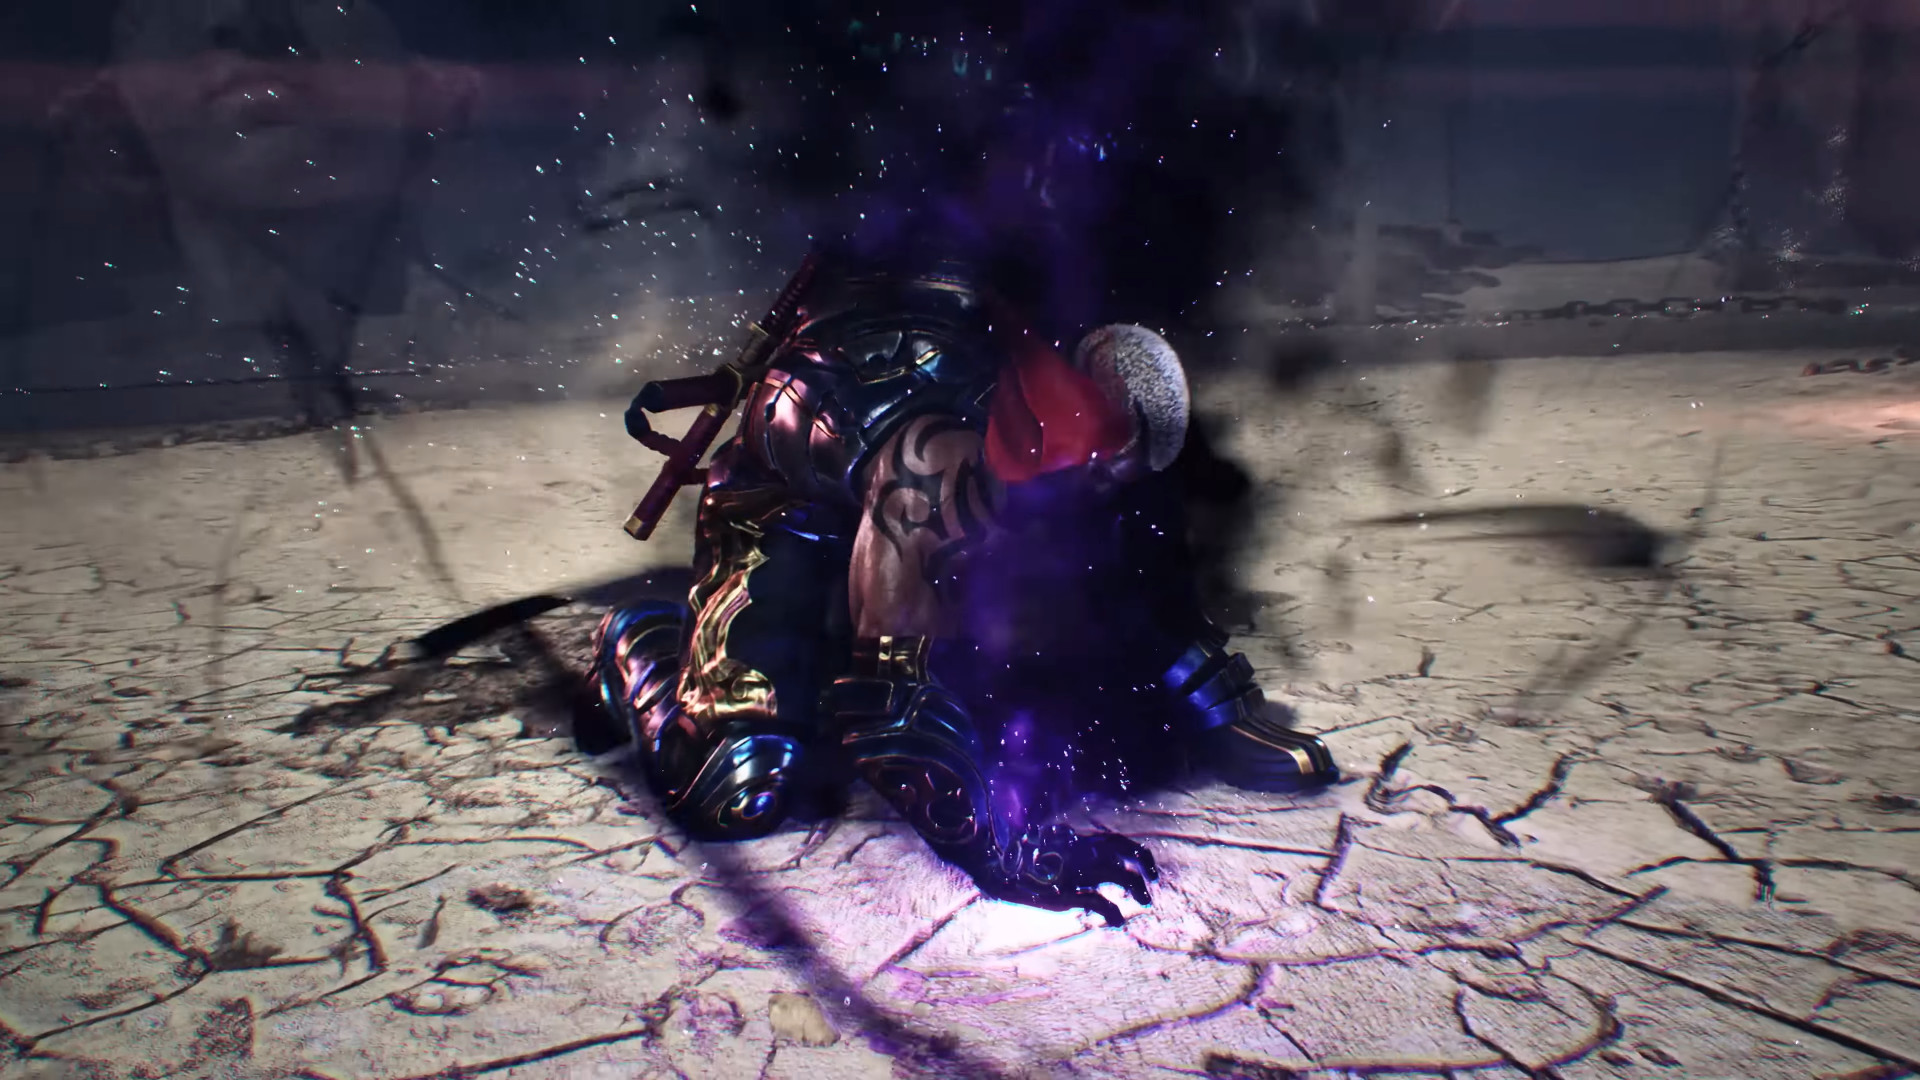 Mortal Kombat 11 apresenta Kollector, mais um personagem inédito